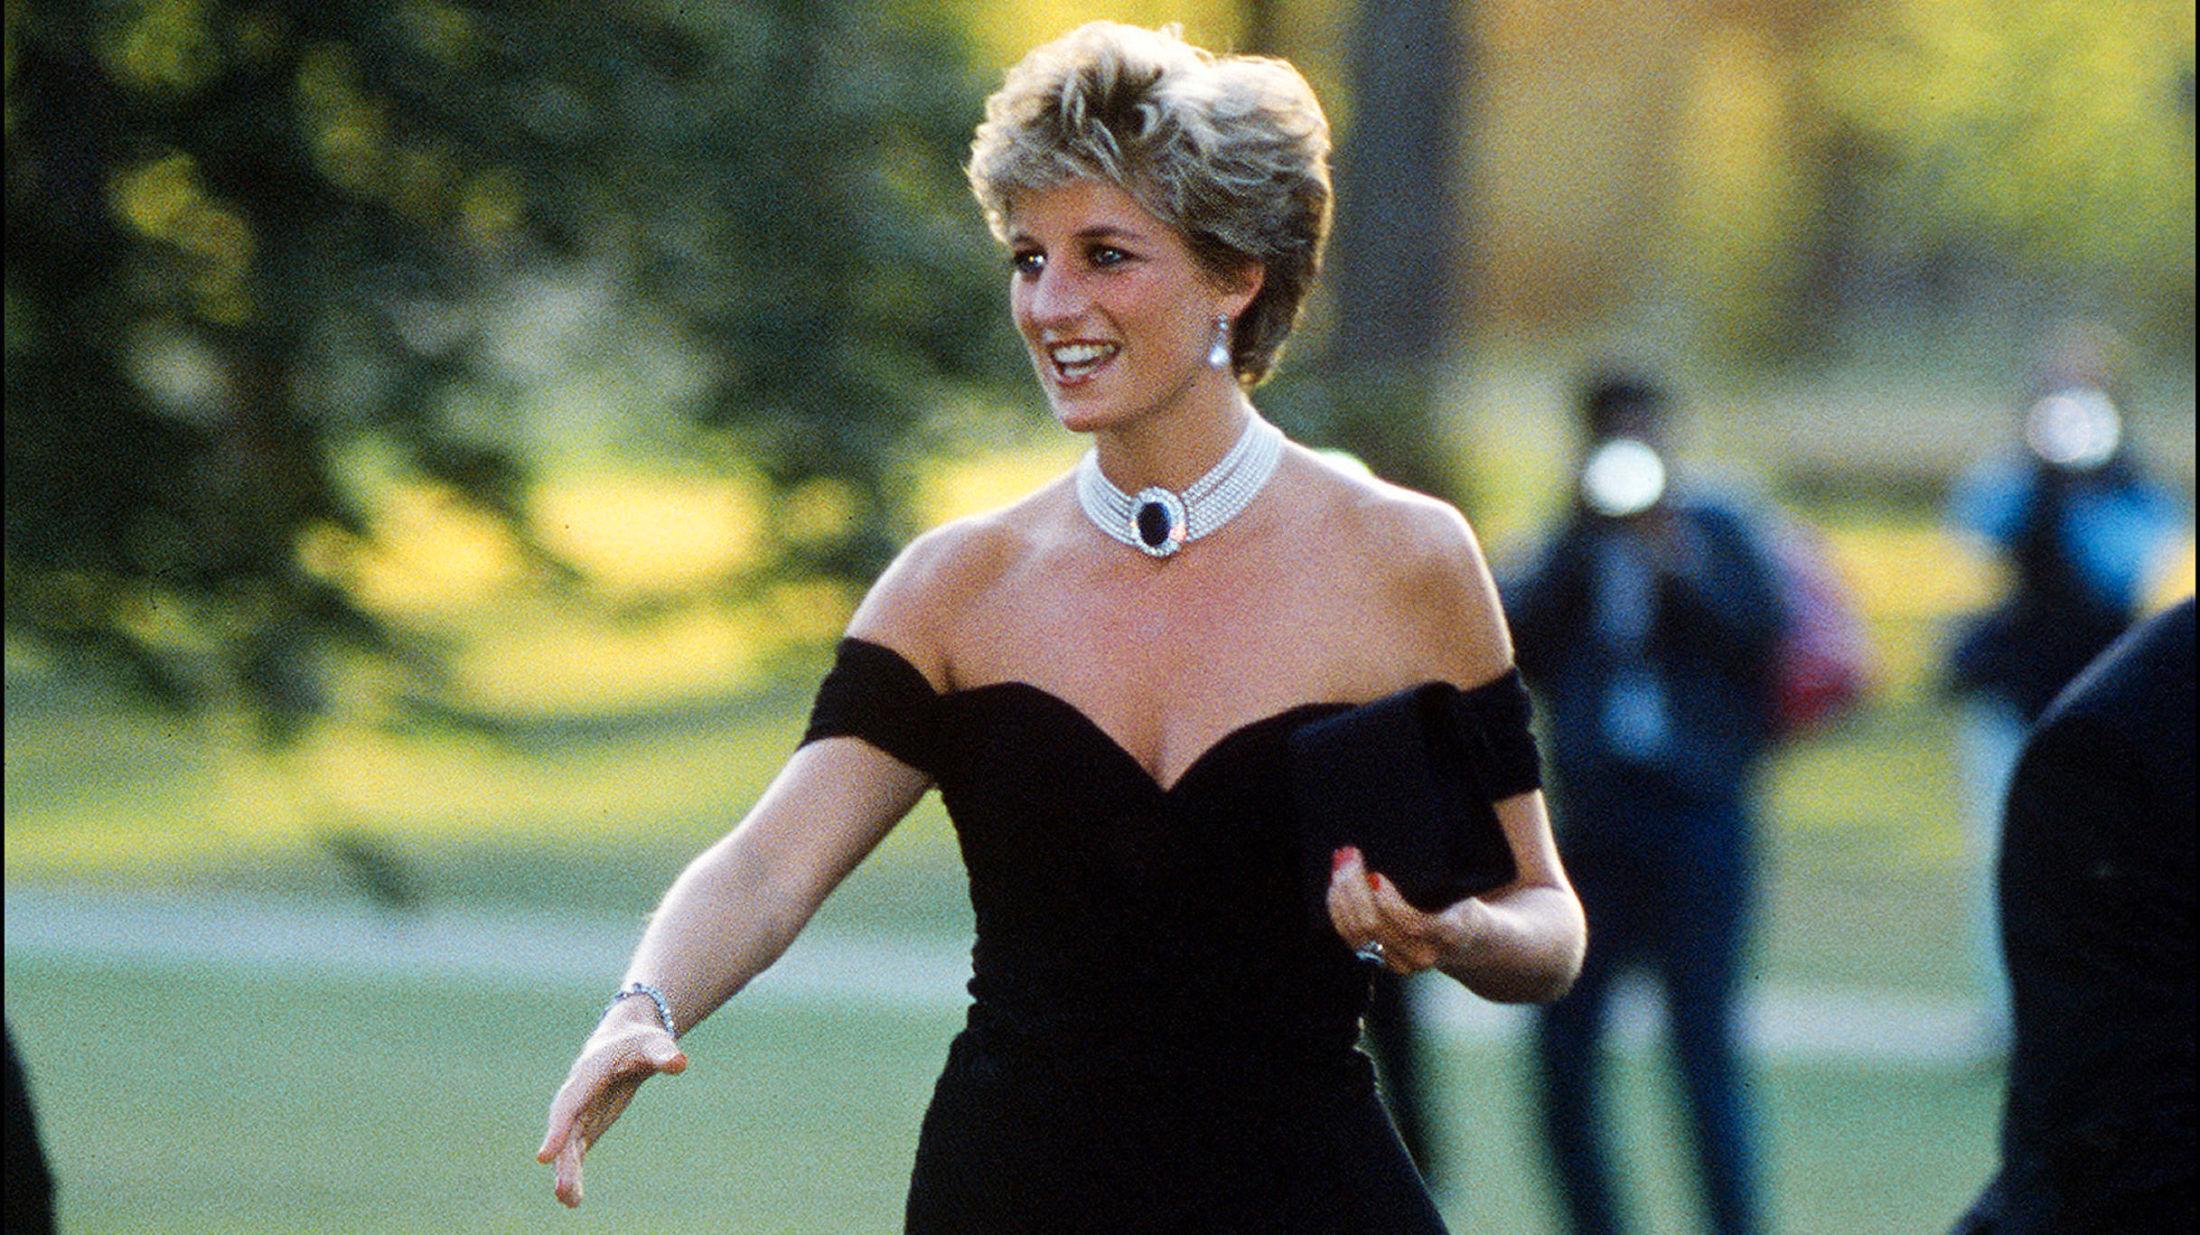 THE QUEEN OF HEARTS: Lady Diana rakk å bli en stilikon tross sine 36 år. Her iført en klassisk kjole fra Christina Stambolian. Foto: Getty Images